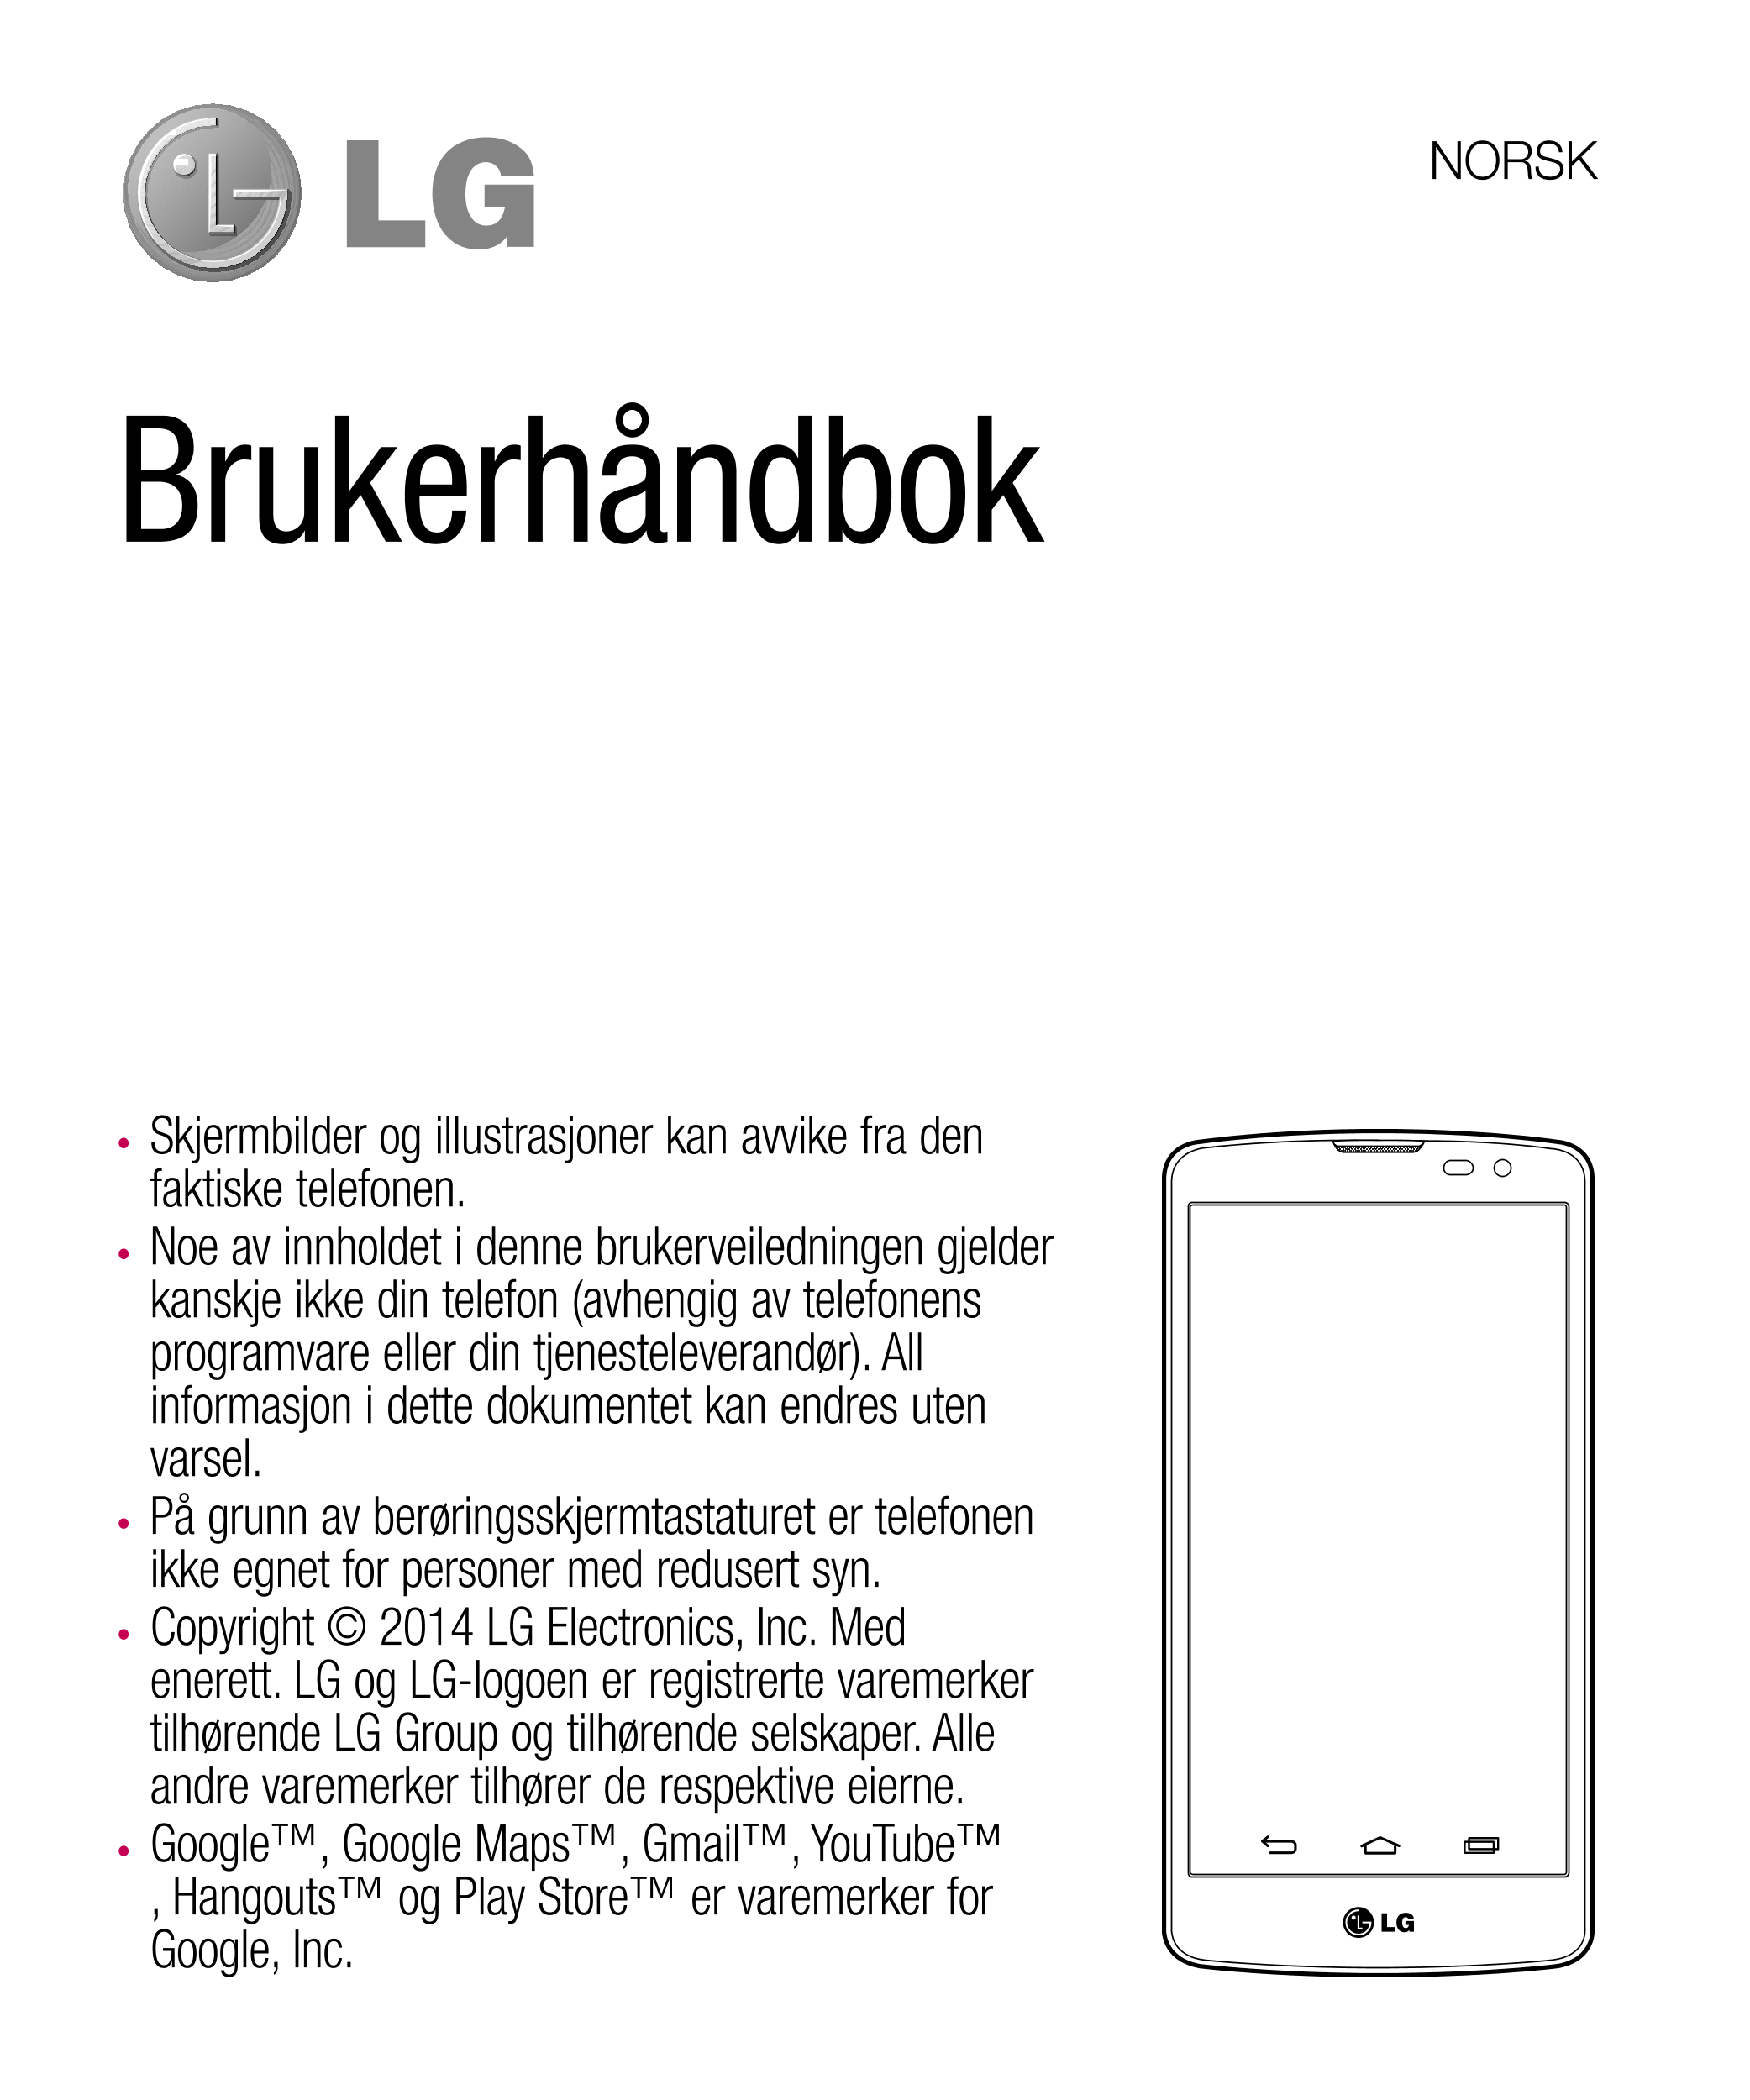 NORSK
Brukerhåndbok
•  Skjermbilder og illustrasjoner kan avvike fra den 
faktiske telefonen.
•  Noe av innholdet i denne bruker